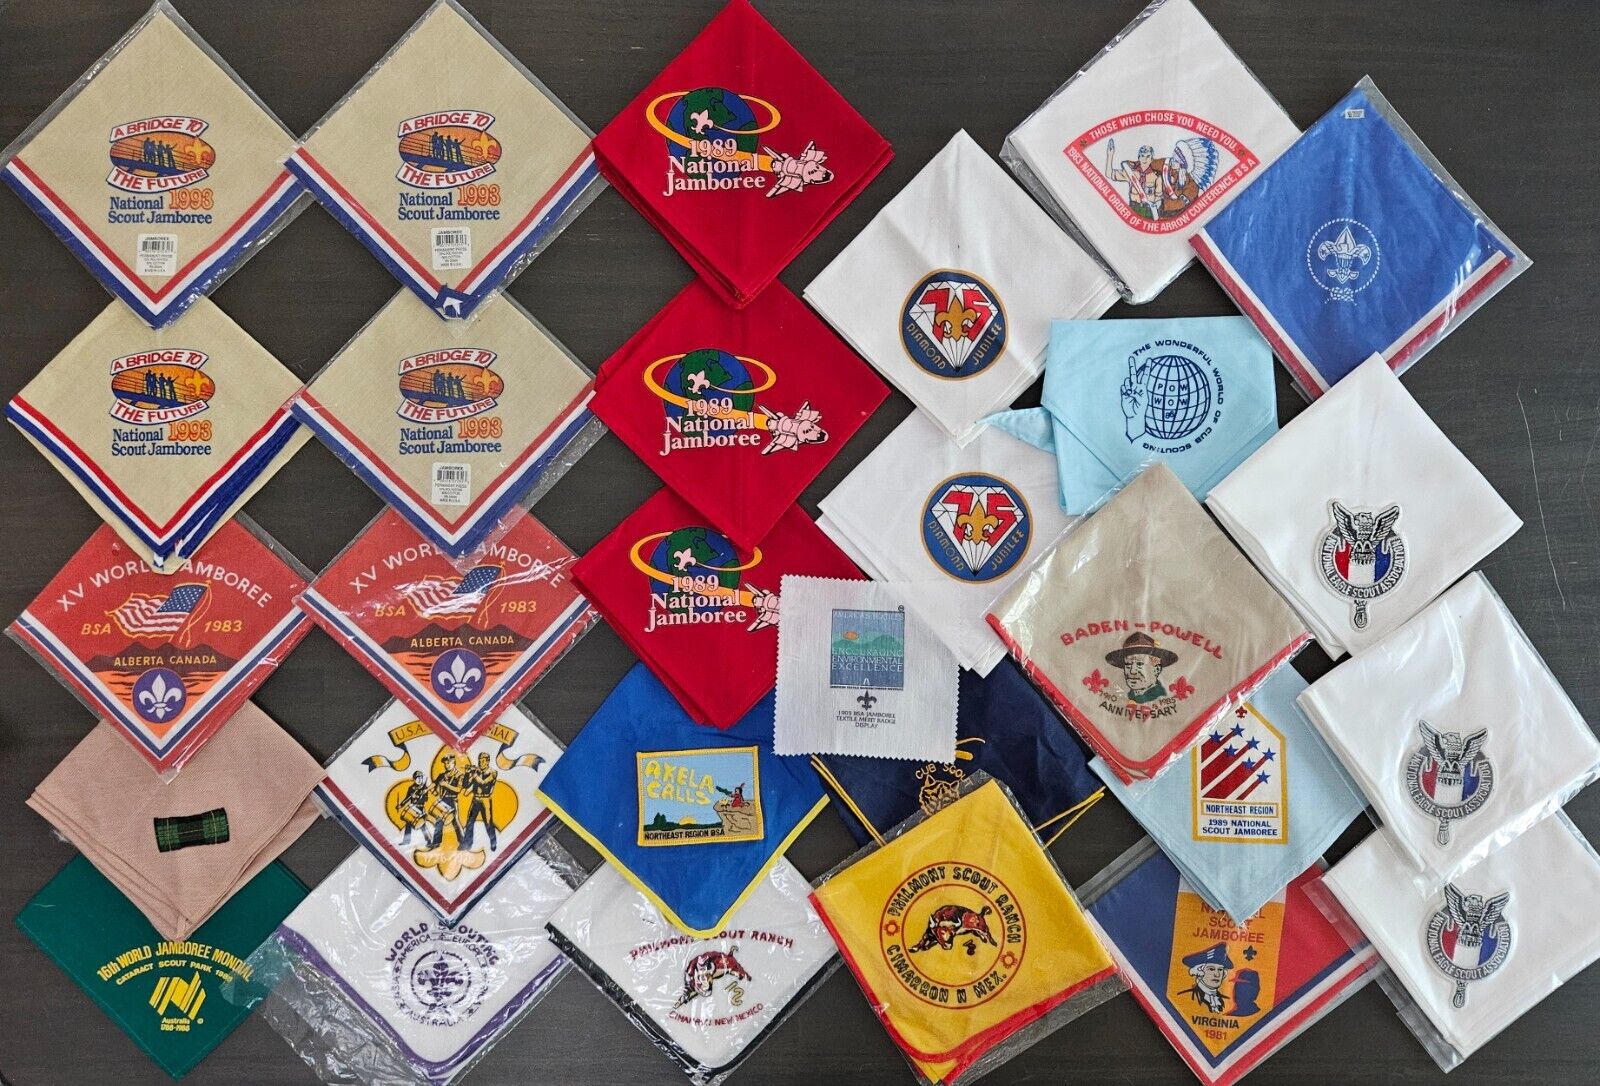 Boy Scouts BSA Large Vintage Philmont NOAC Jamboree Neckerchief Lot of 28